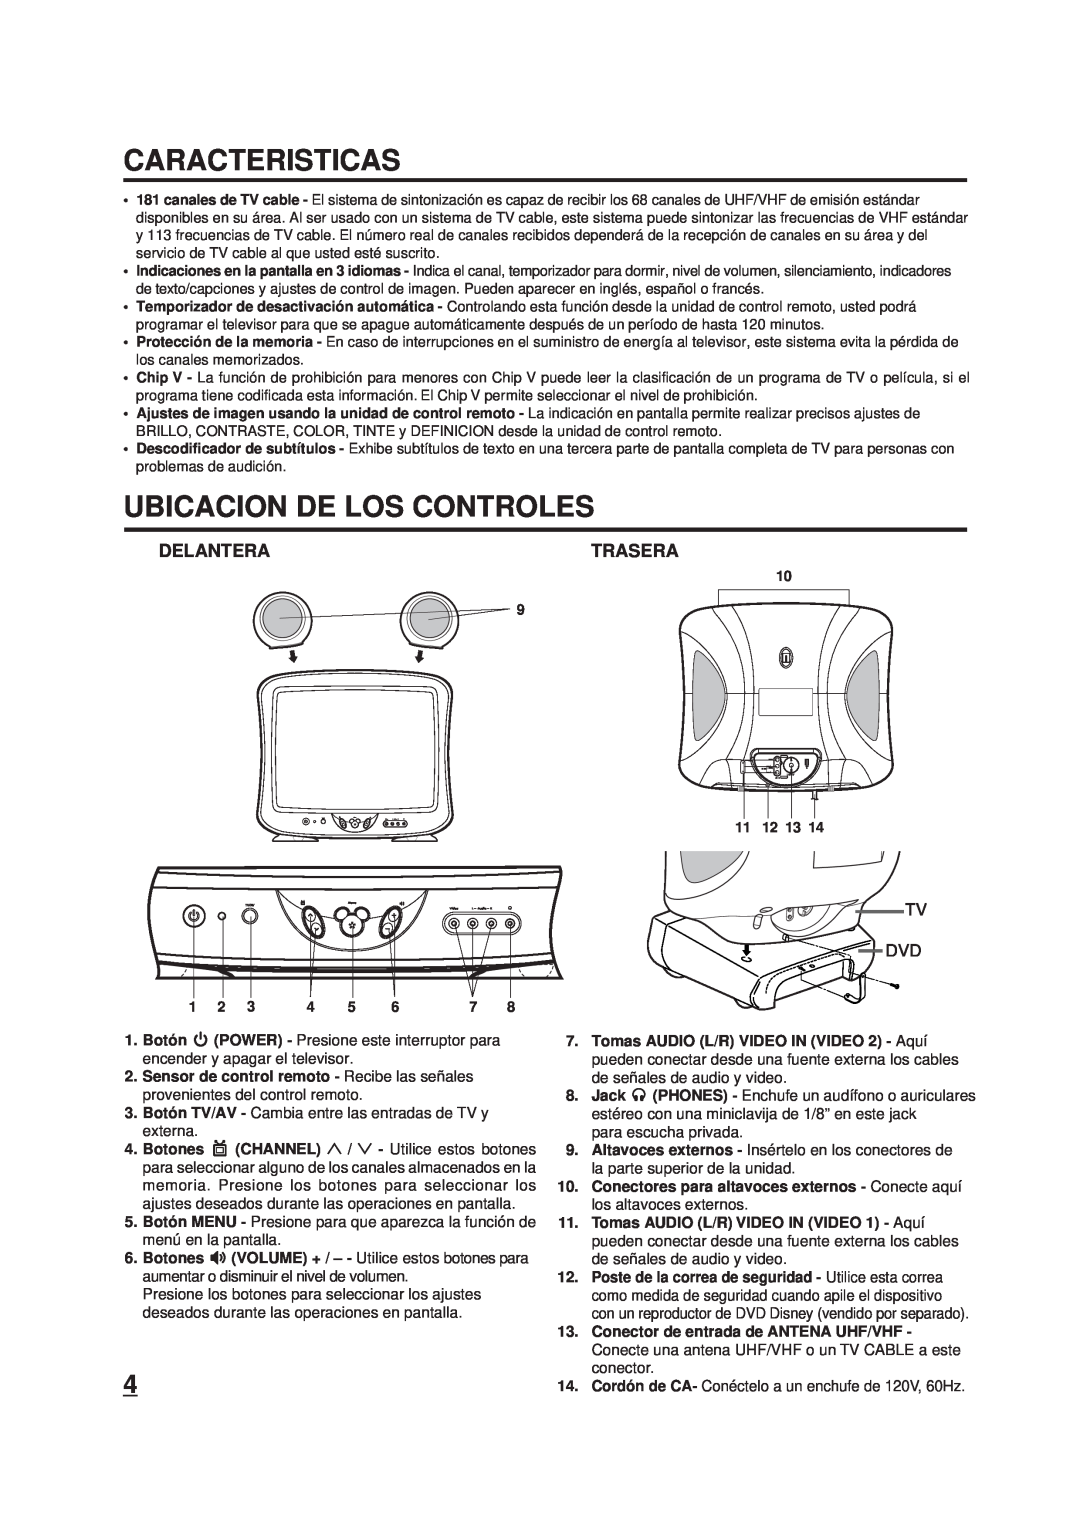 Memorex DT1900-C manual Caracteristicas, Ubicacion De Los Controles, Delantera, Trasera 